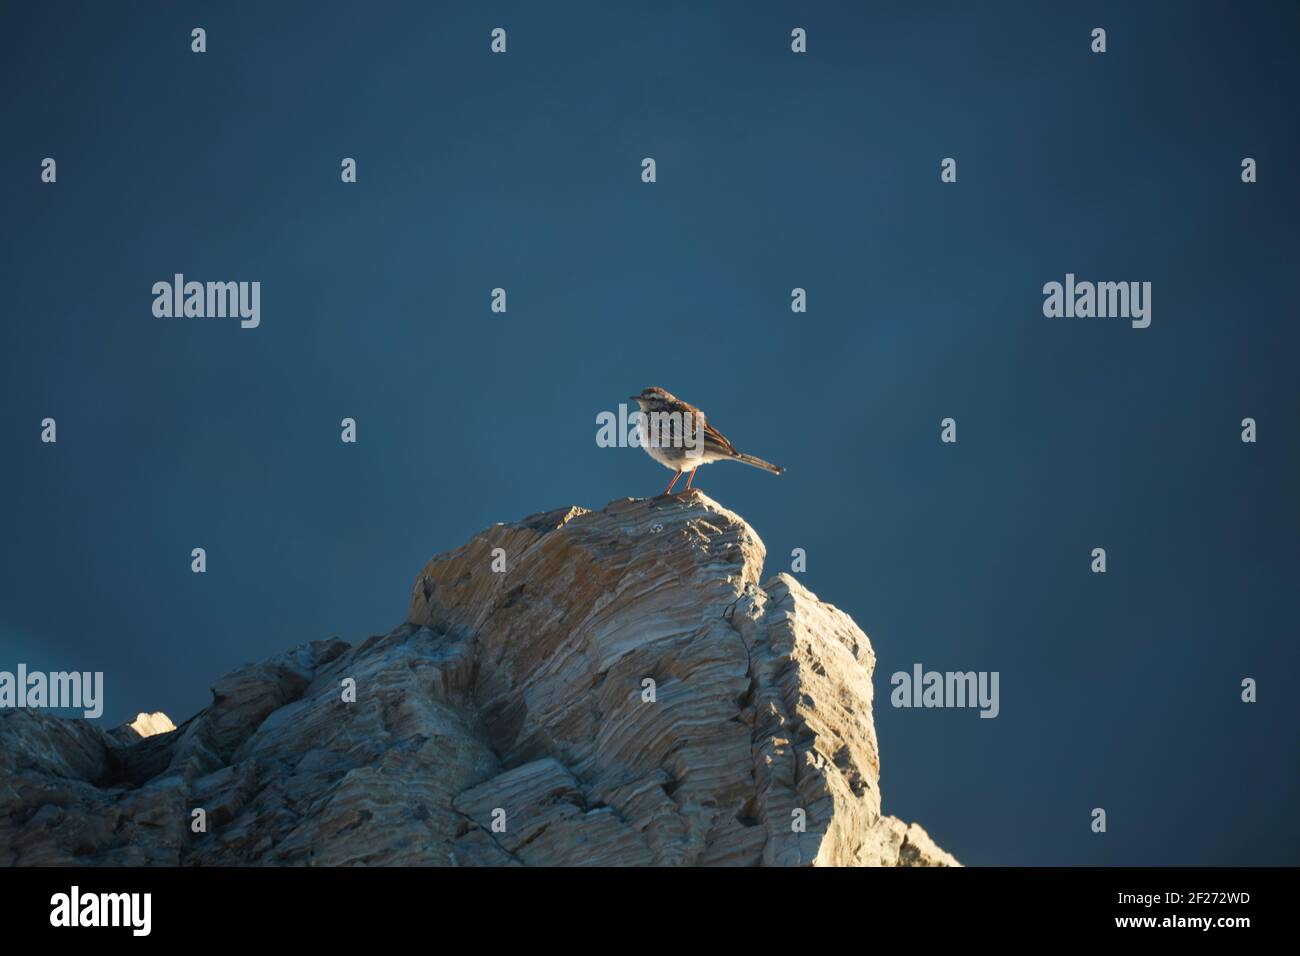 Pipit de Nouvelle-Zélande (Anthus novaeseelandiae) sur la roche, Sealy Range, Aoraki / Parc national du Mont Cook, Île du Sud, Nouvelle-Zélande Banque D'Images